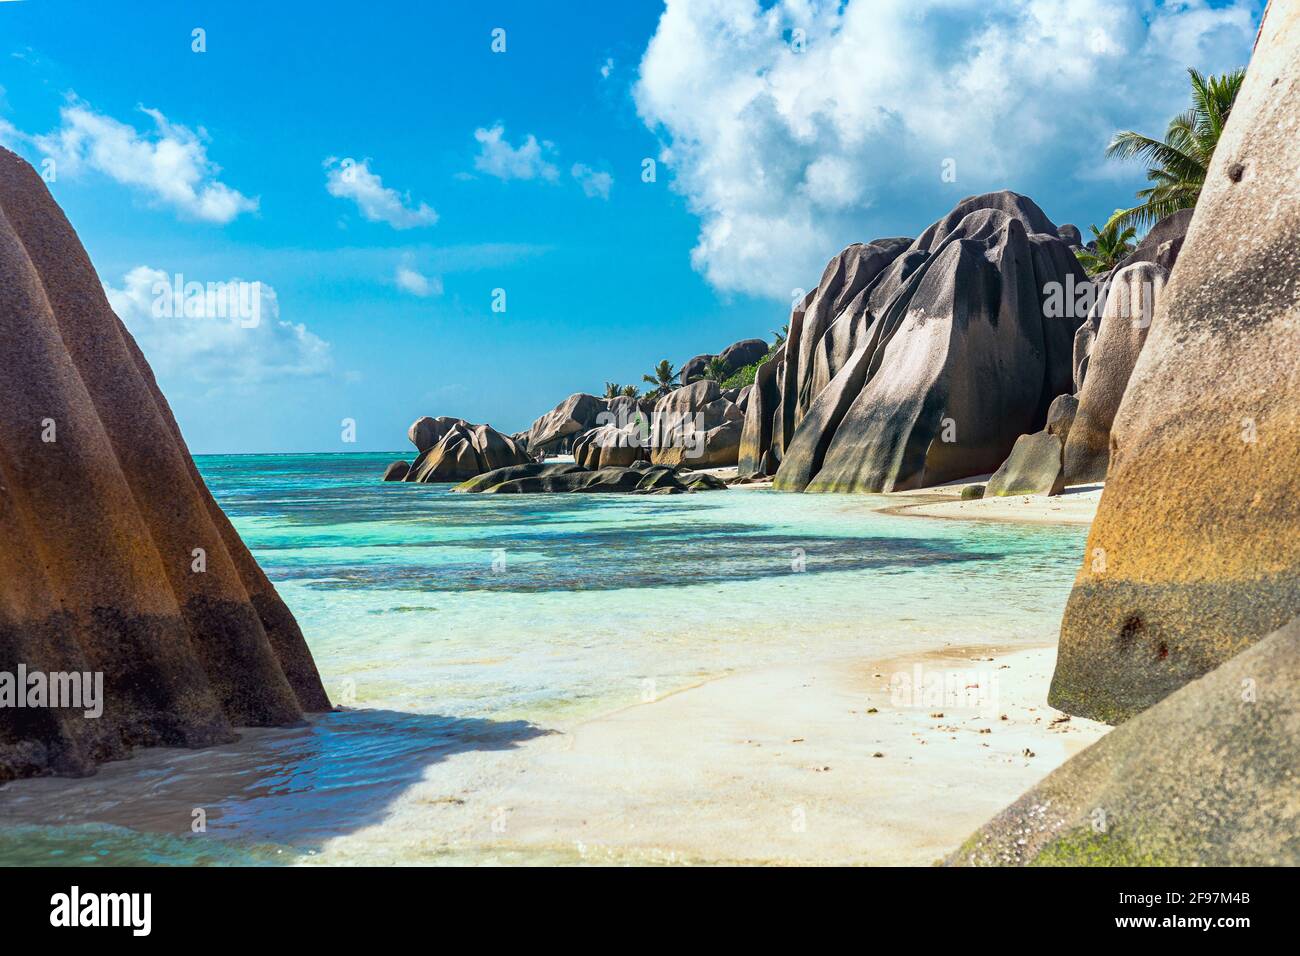 Scena tipica delle Seychelles: Acqua turqoise cristallina, sabbia bianca, Palme - tutto sembra un sogno Foto Stock